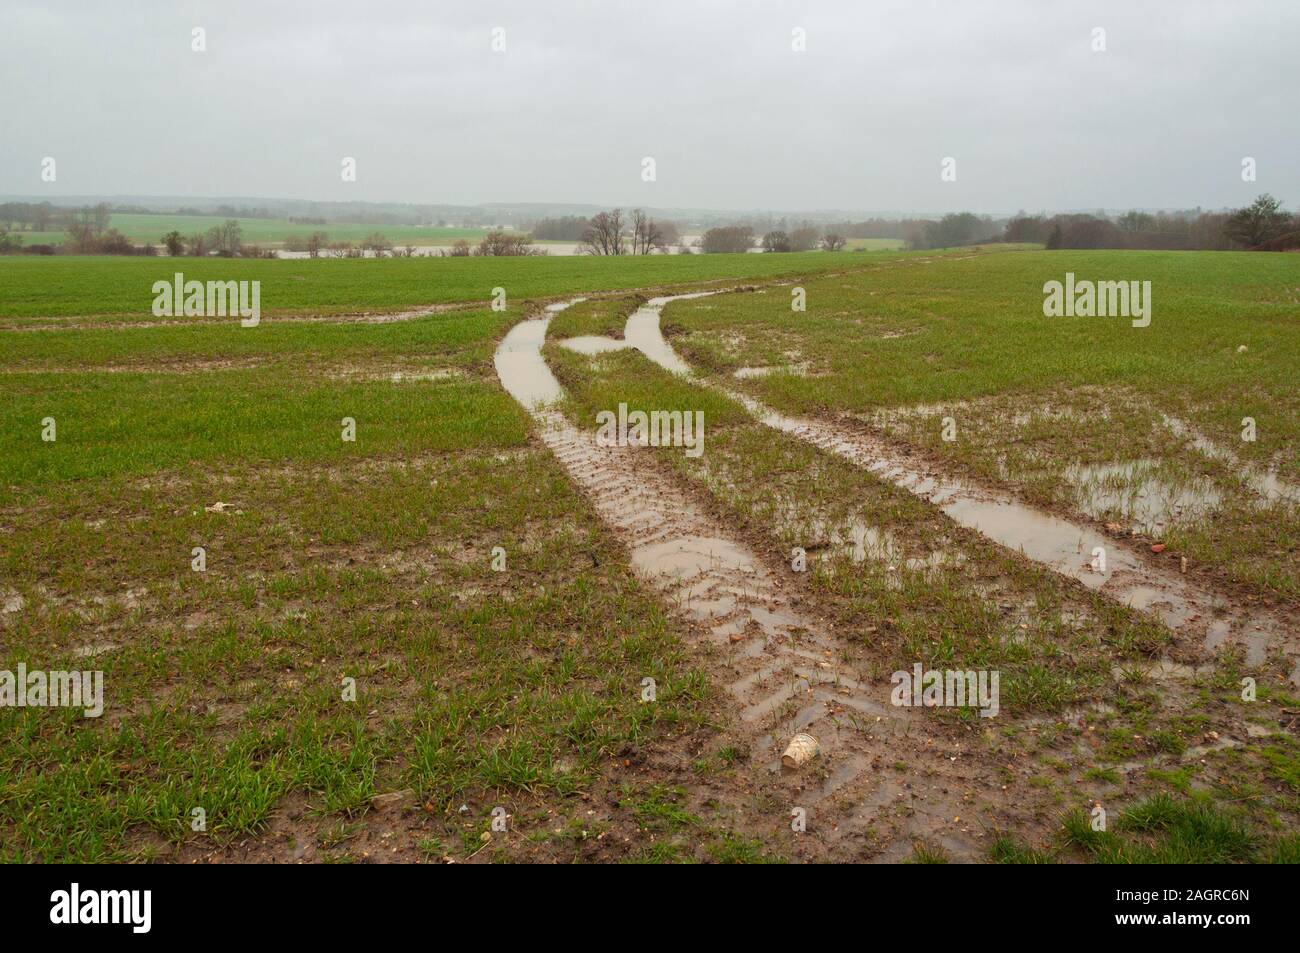 Les chenilles du tracteur dans un champ après de fortes pluies en milieu rural England UK Bedfordshire Banque D'Images